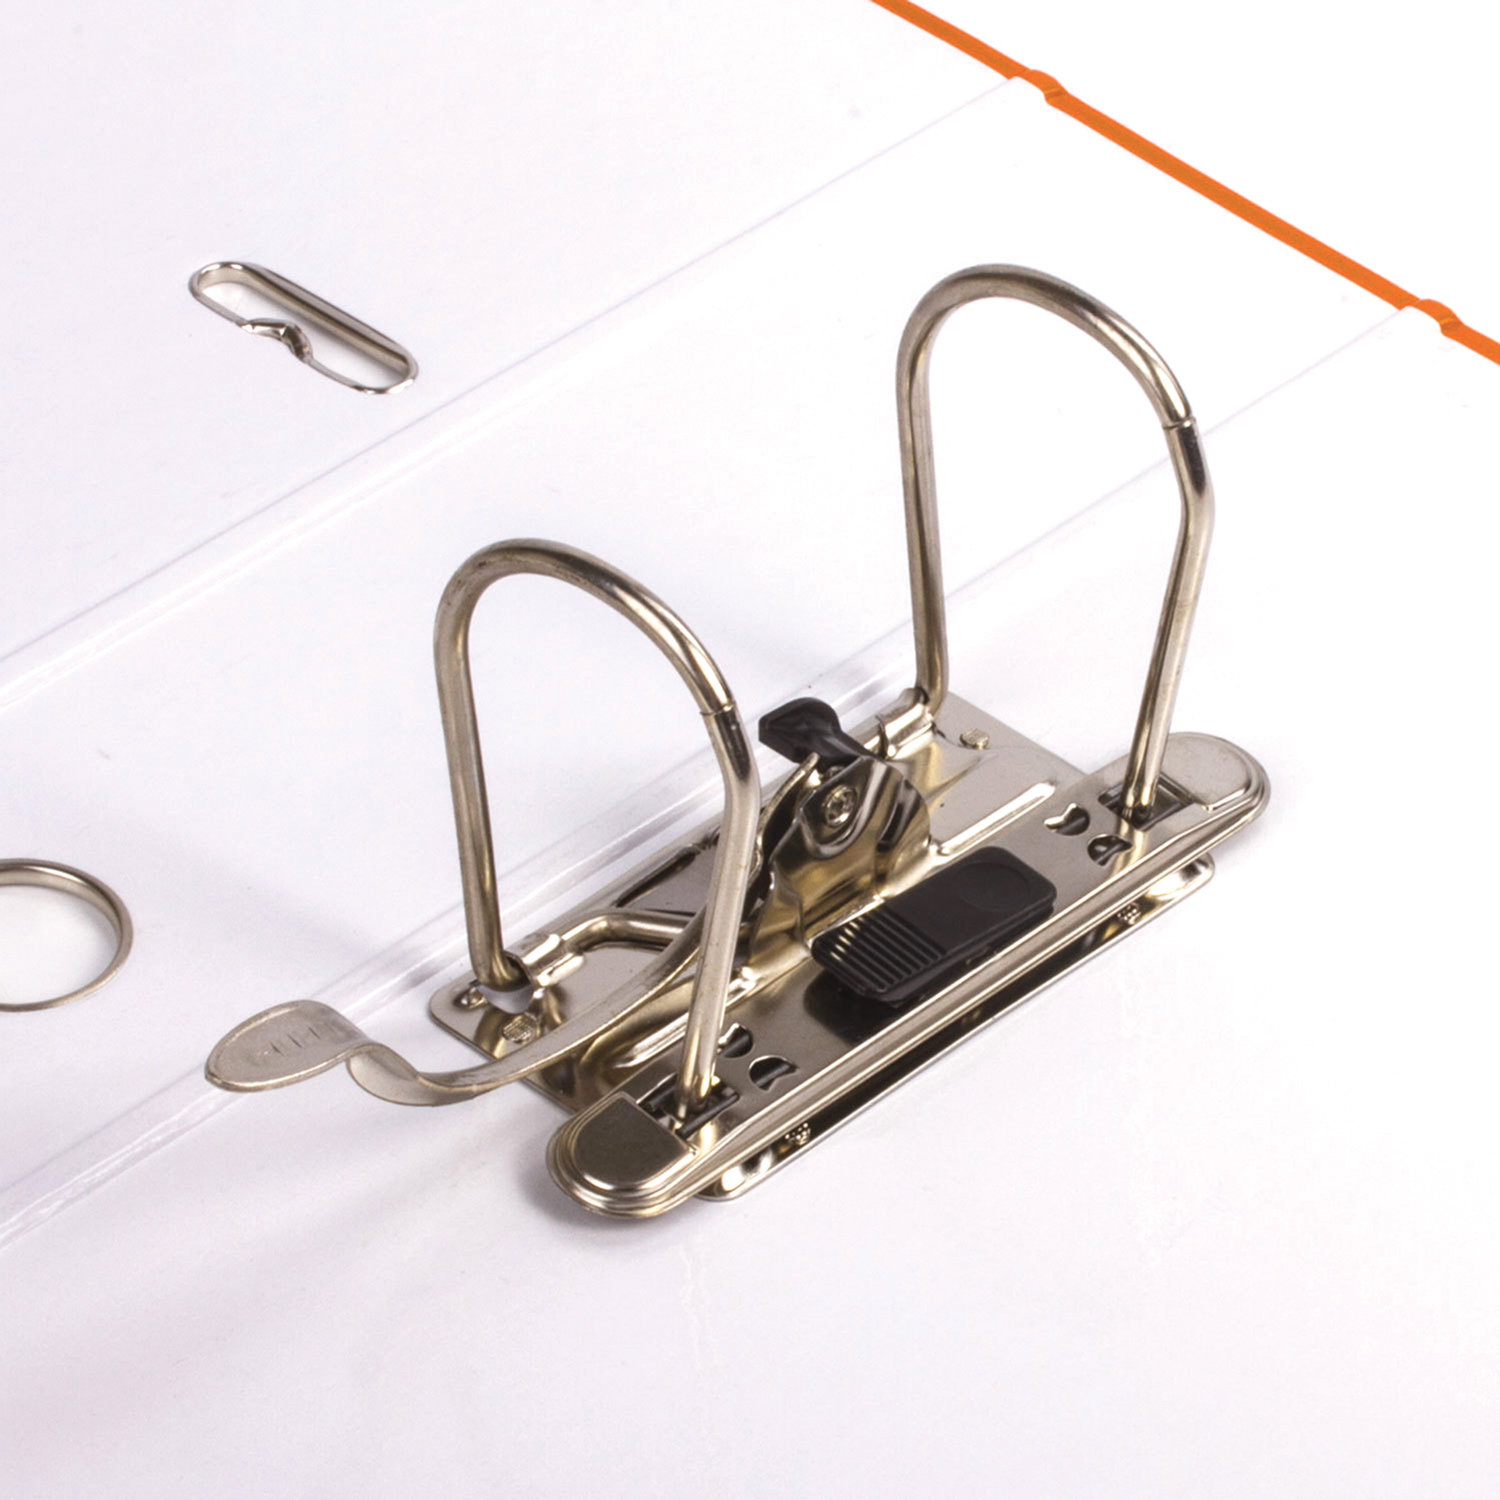 Папка-регистратор LEITZ, механизм 180°, покрытие пластик, 80 мм, оранжевая, 10101245